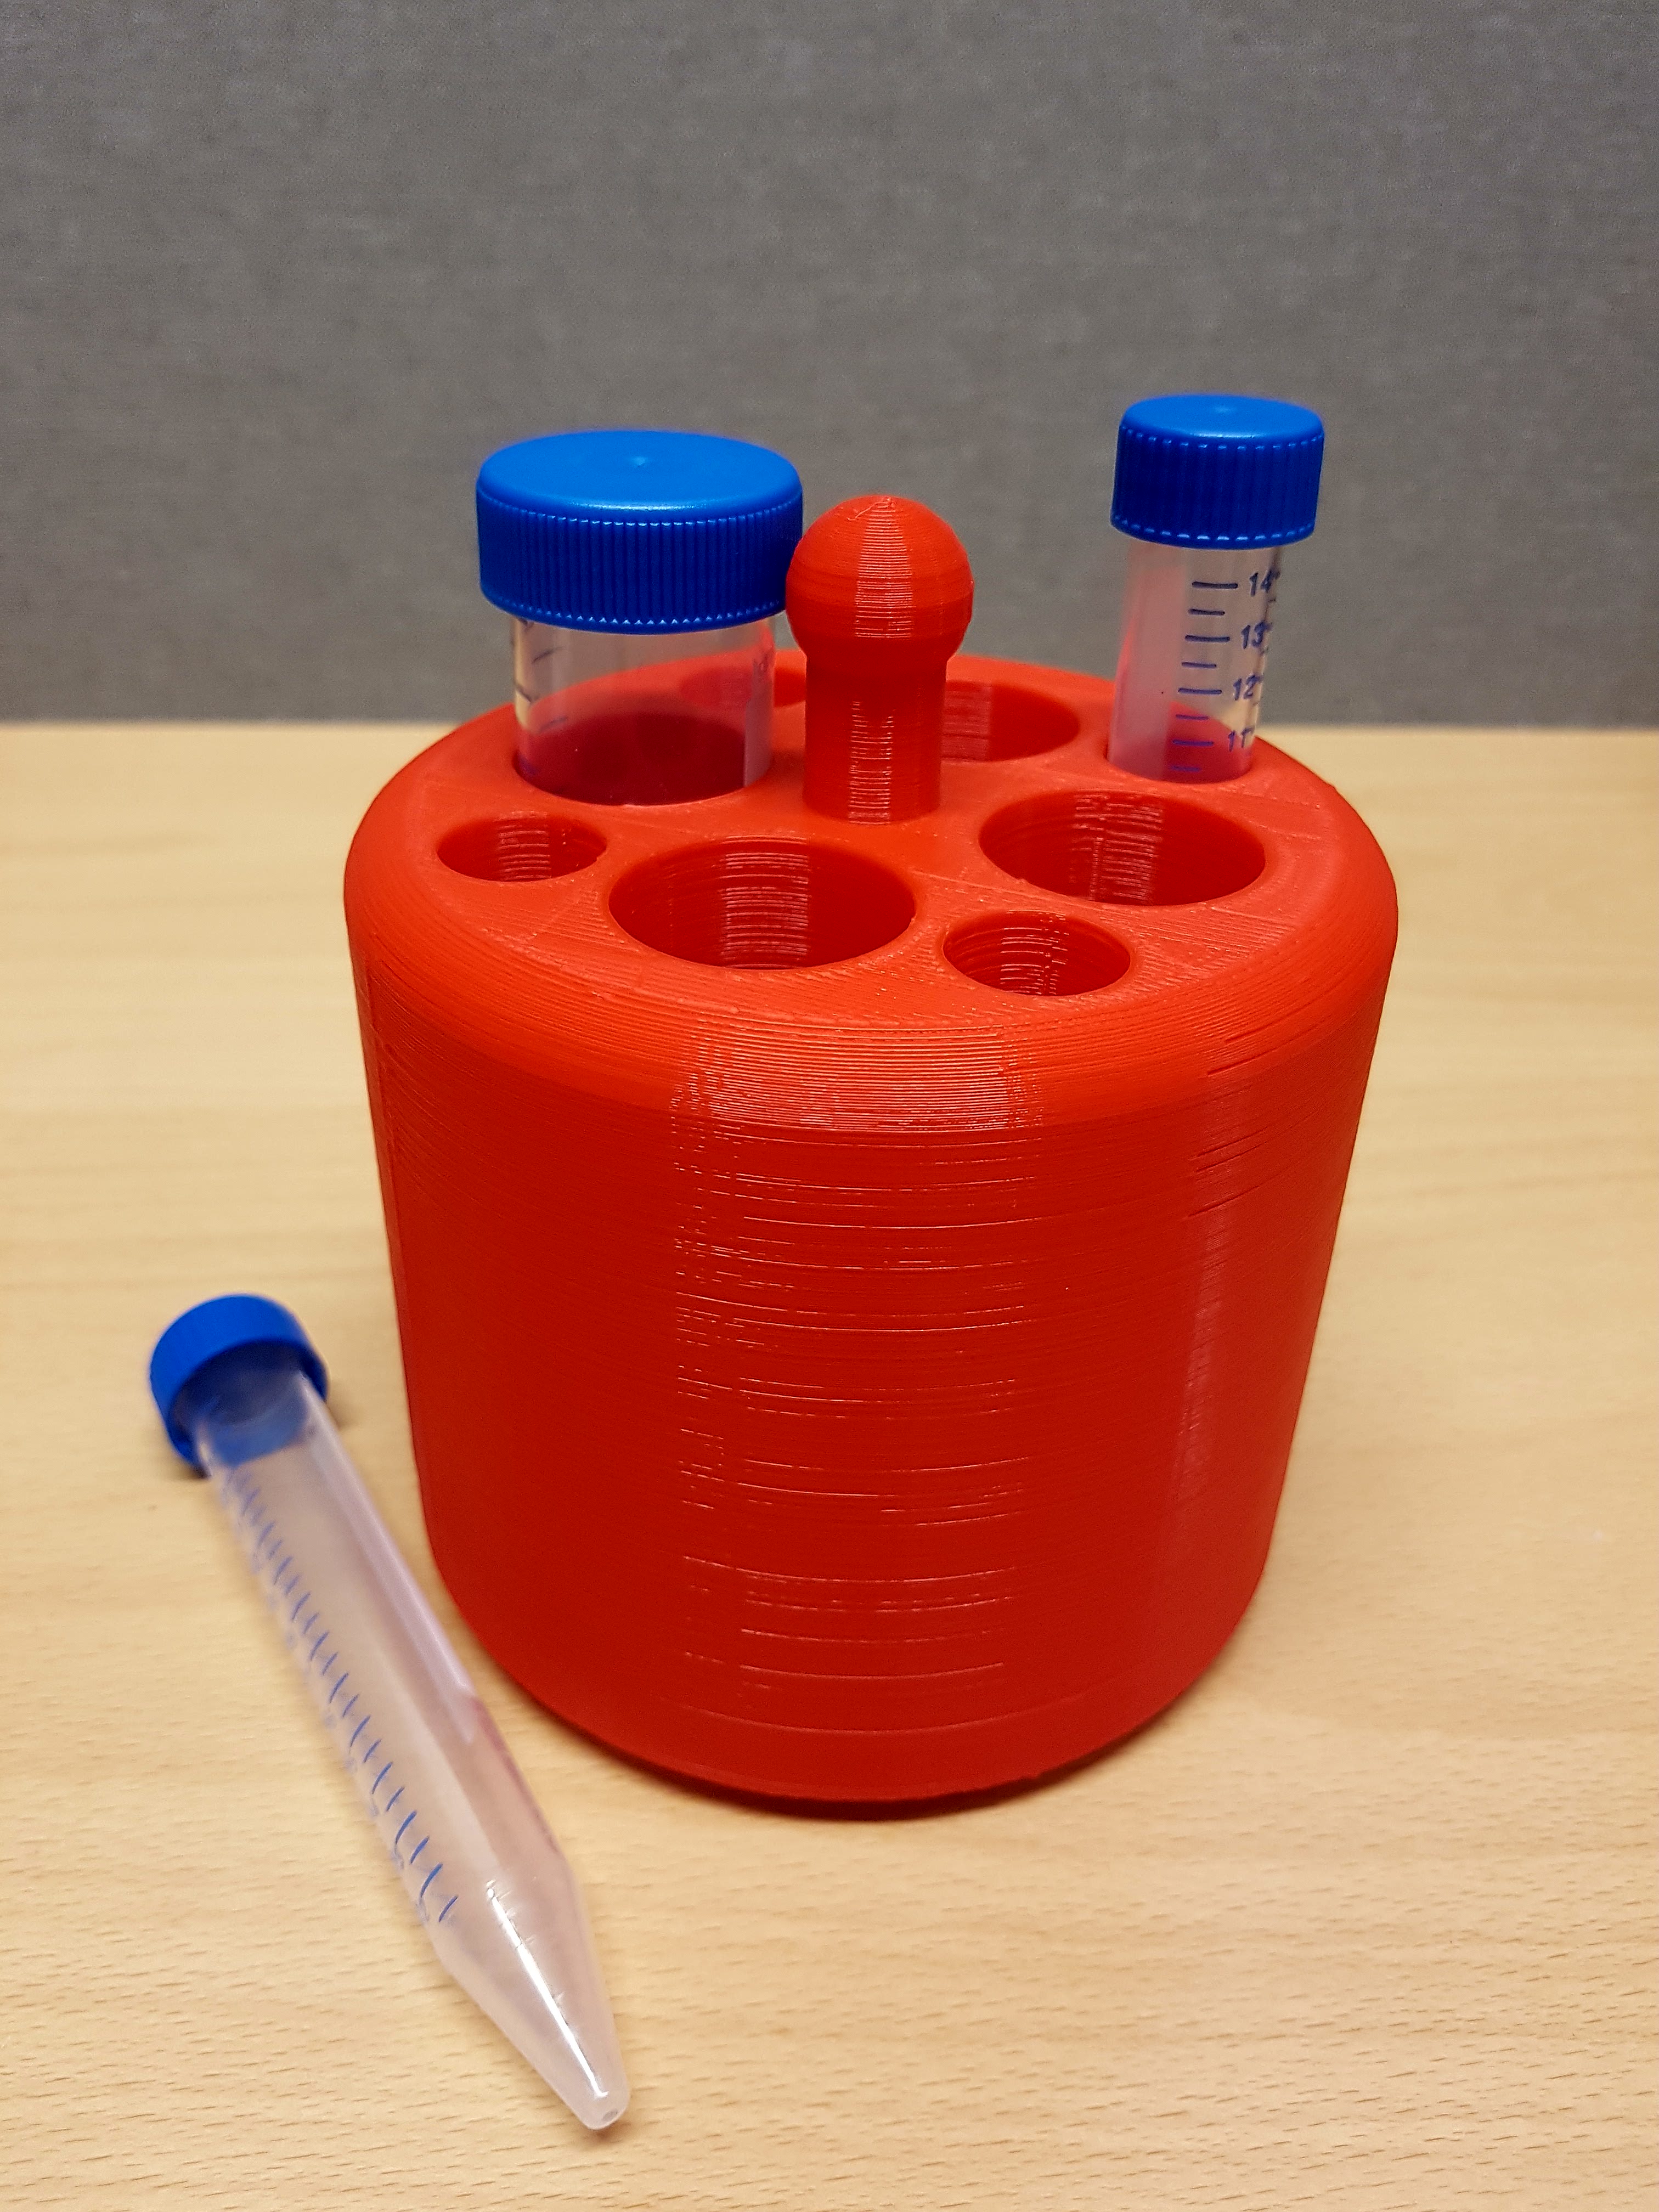 Sample holder for centrifuge